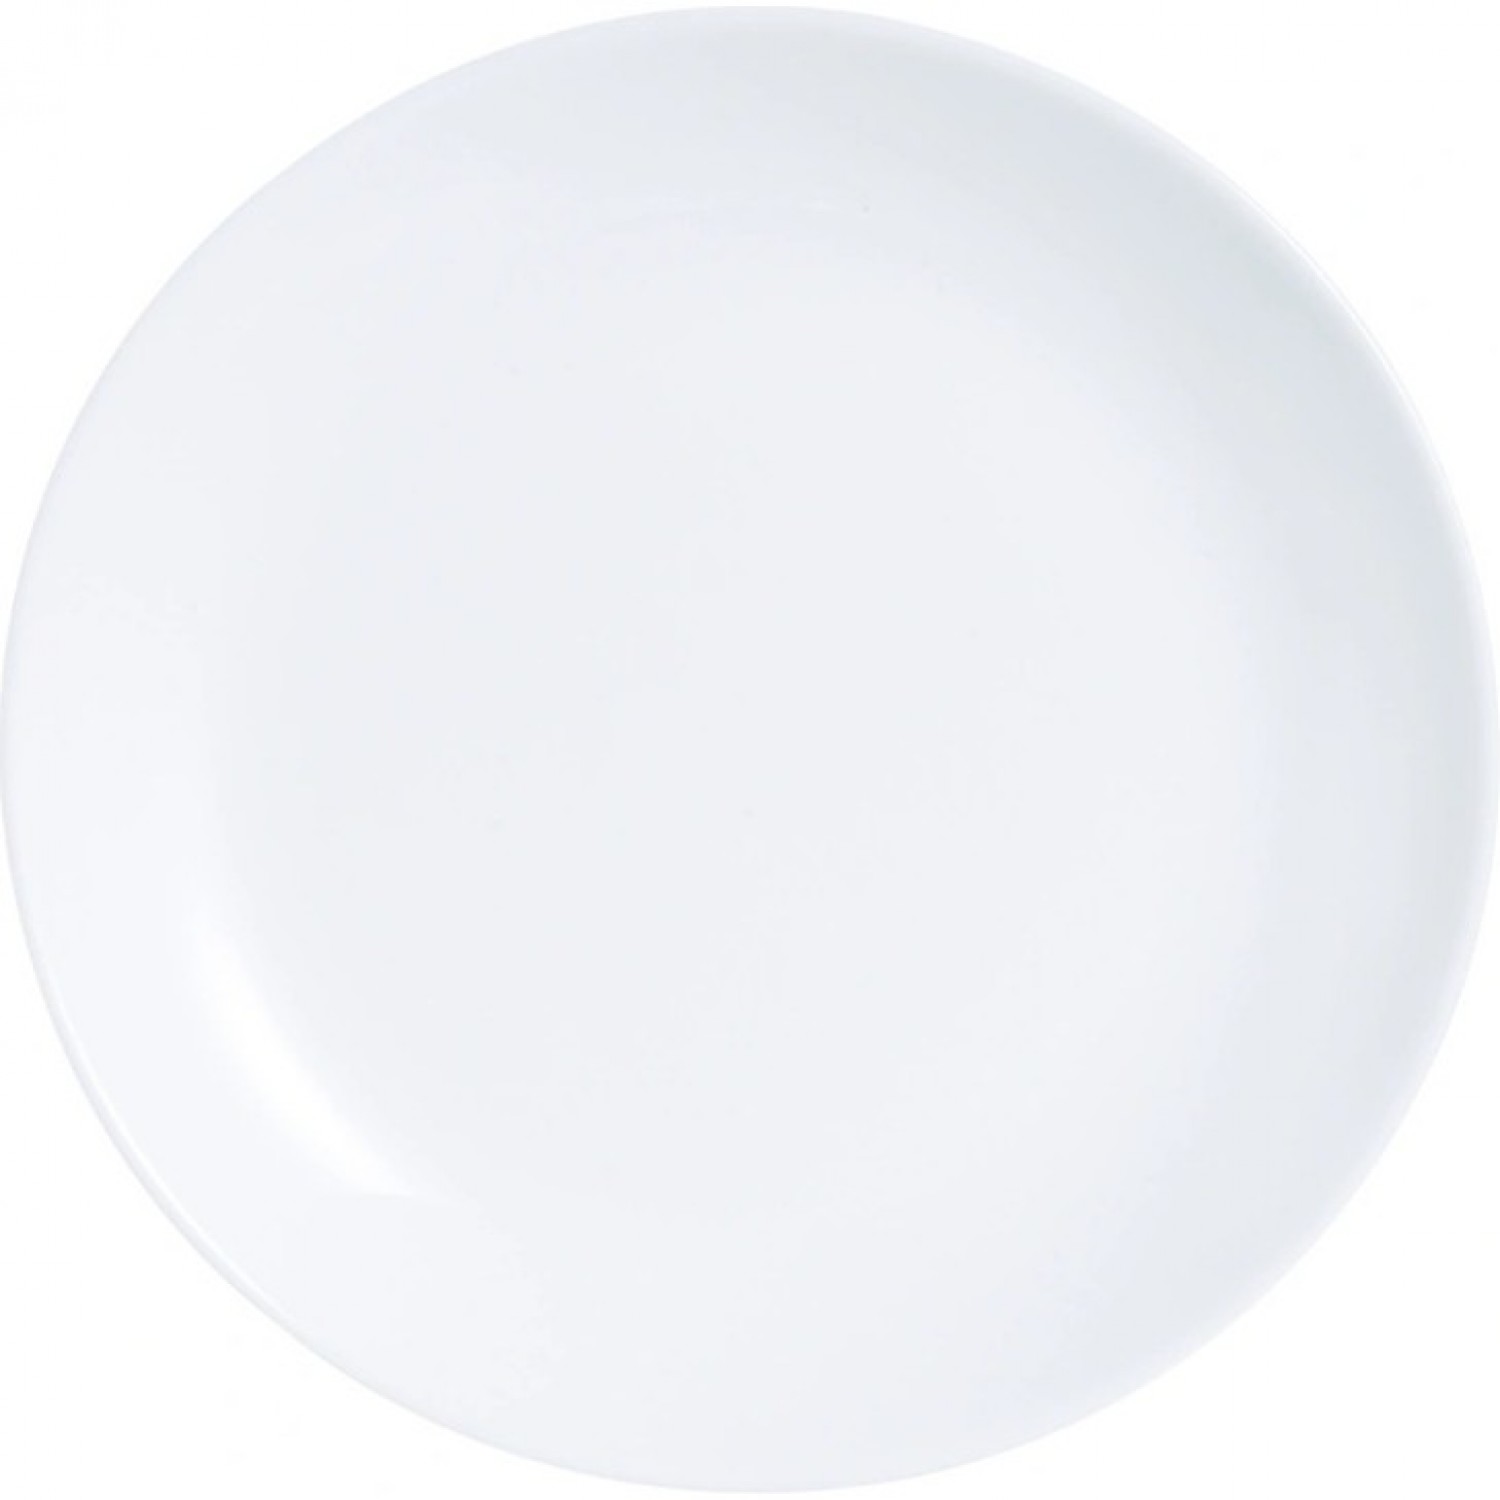 Тарелка обеденная ДИВАЛИ 25см LUMINARC D6905 (P3299) тарелка обеденная luminarc дивали лайт блю p2610 25см